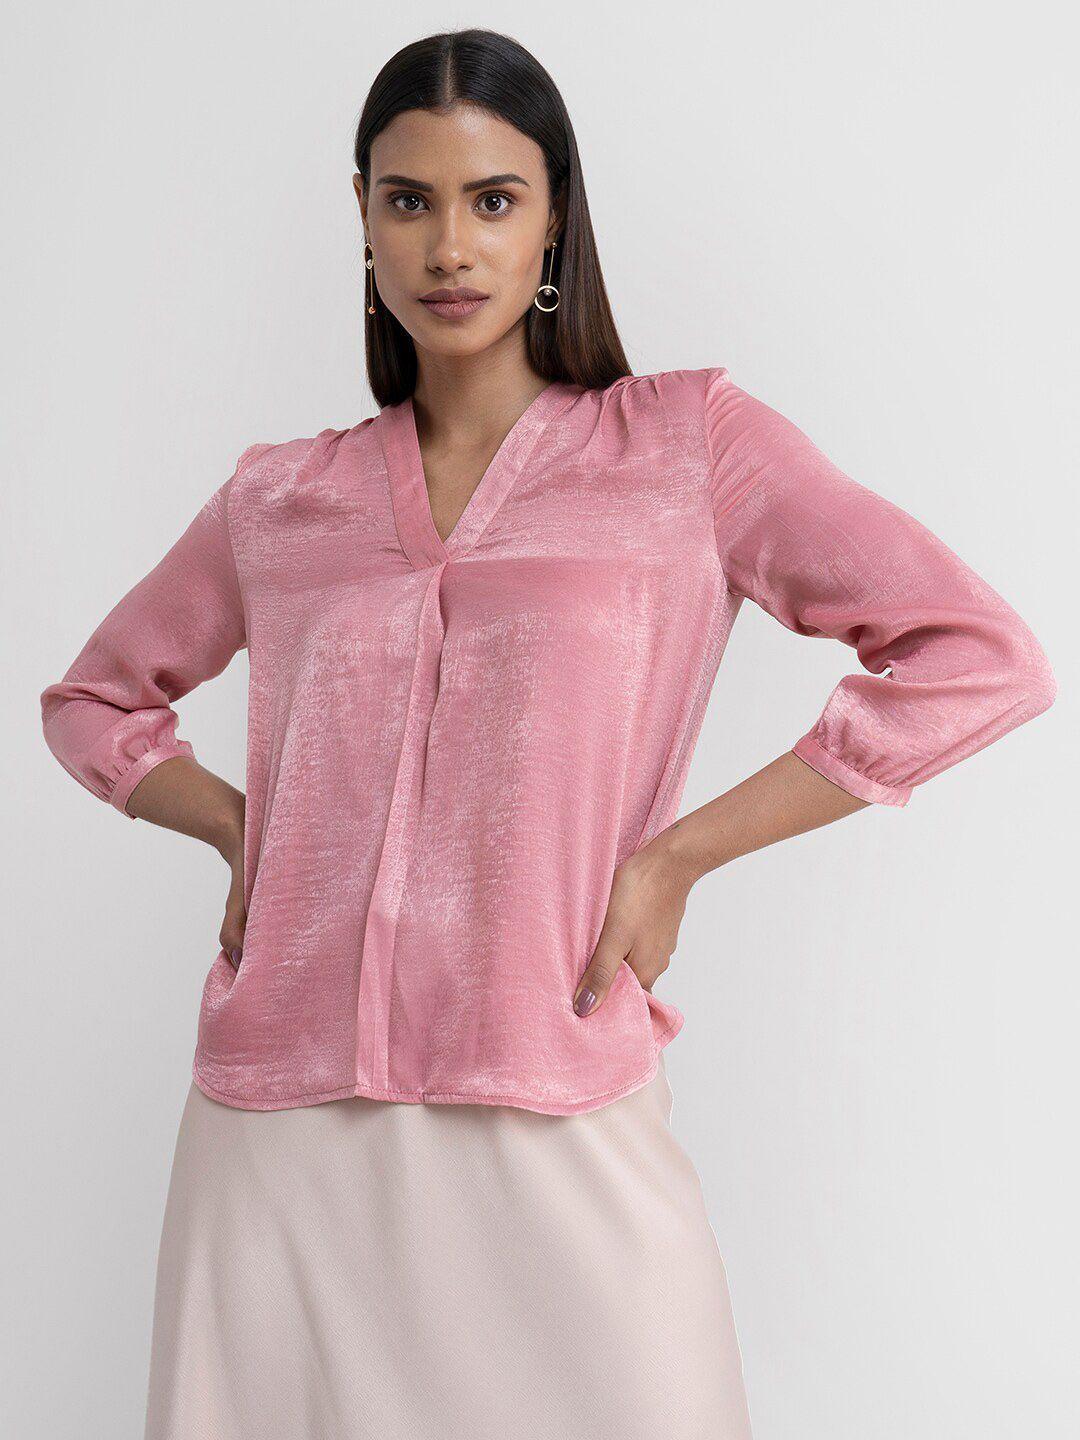 fablestreet pink mandarin collar satin shirt style top